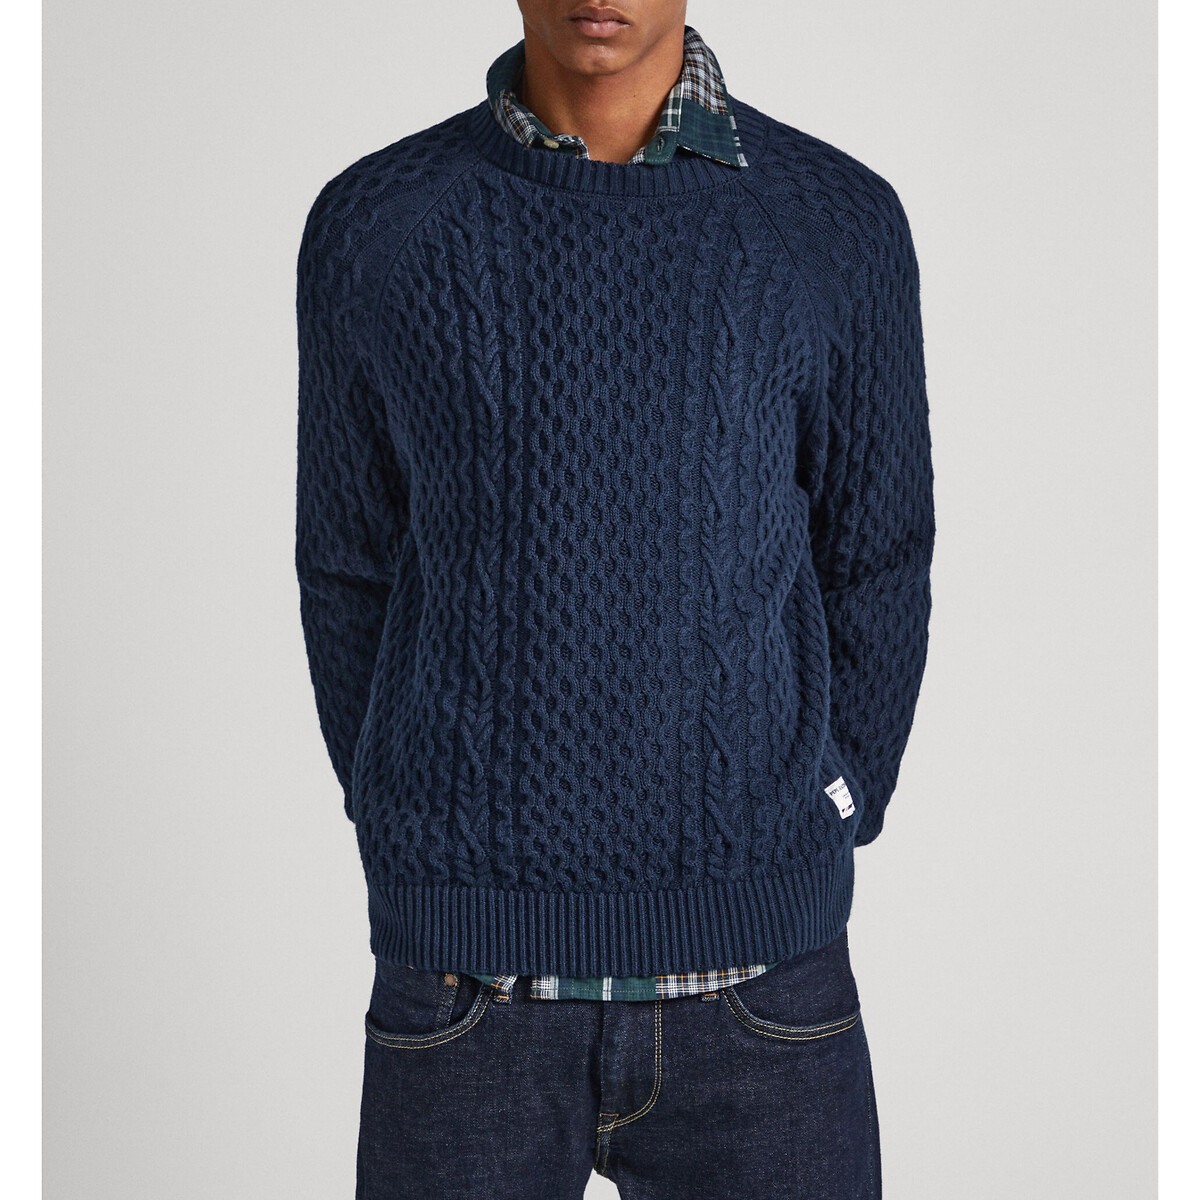 Пуловер с круглым вырезом из текстурированного трикотажа M синий пуловер с круглым вырезом из текстурированного трикотажа m синий